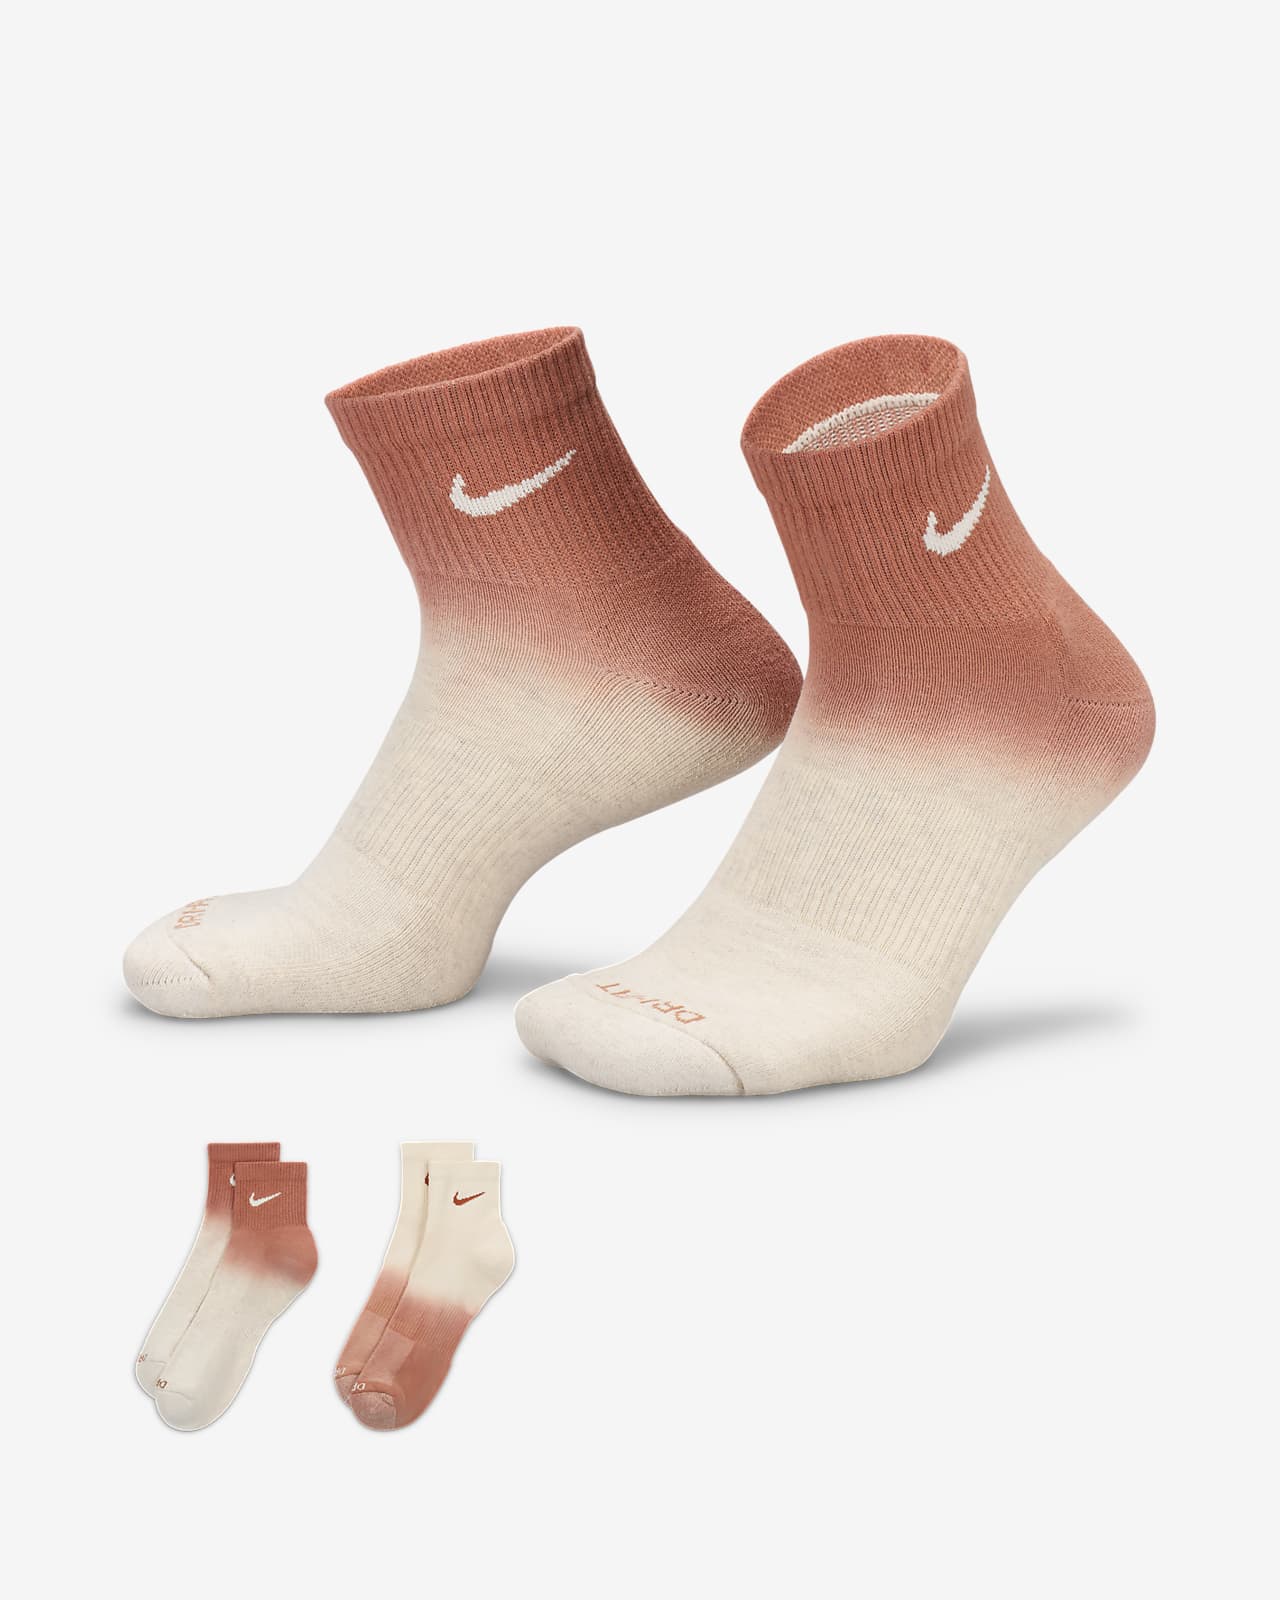 Socquettes rembourrées Nike Everyday Plus (2 paires)